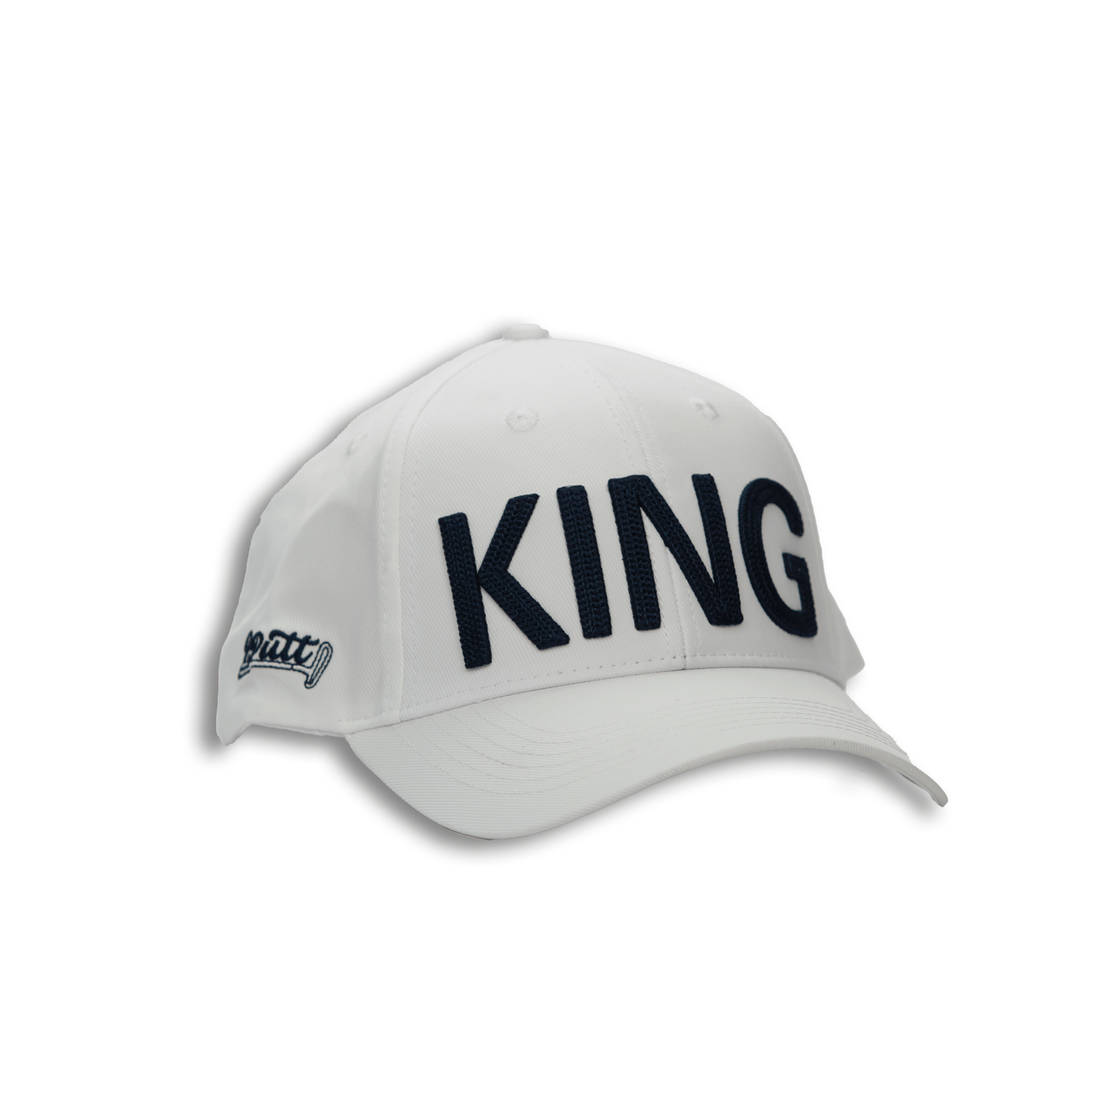 KING Hat - 2putt